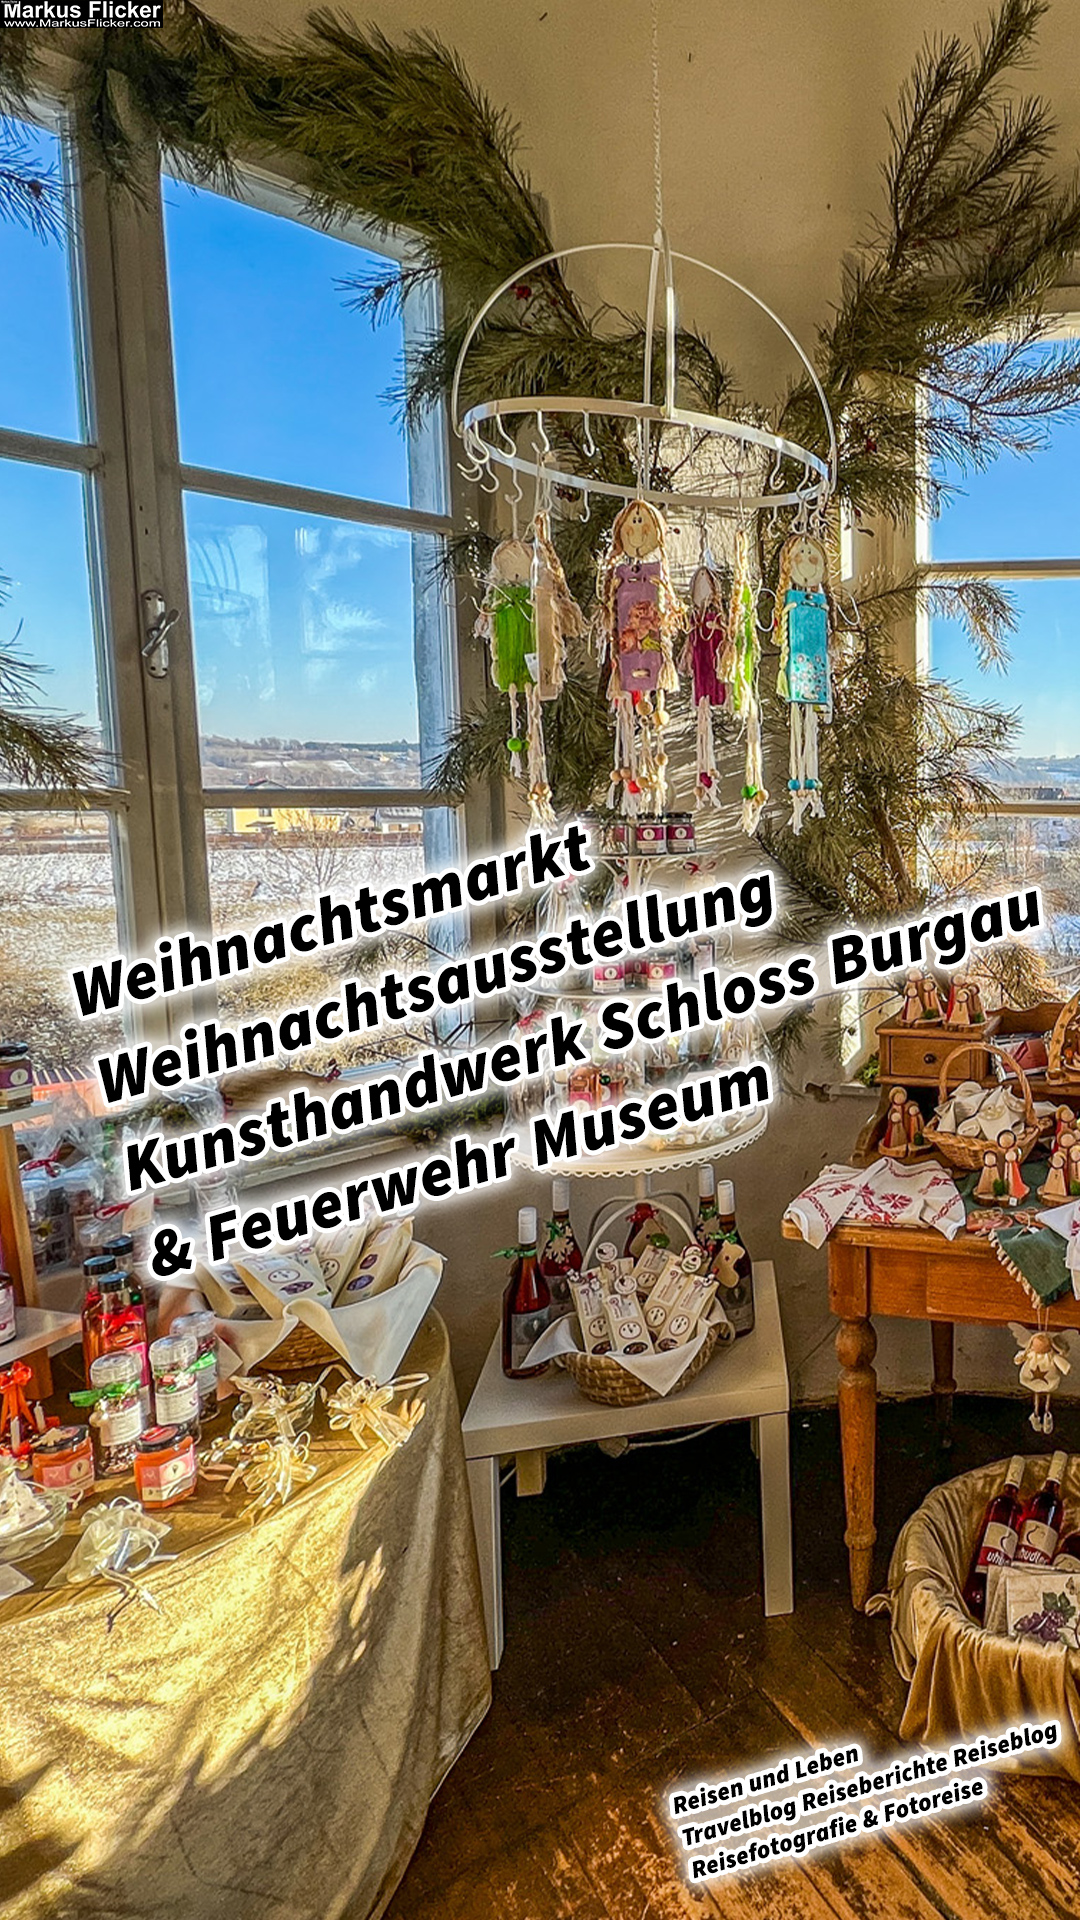 Weihnachtsmarkt Weihnachtsausstellung Kunsthandwerk Schloss Burgau & Feuerwehr Museum